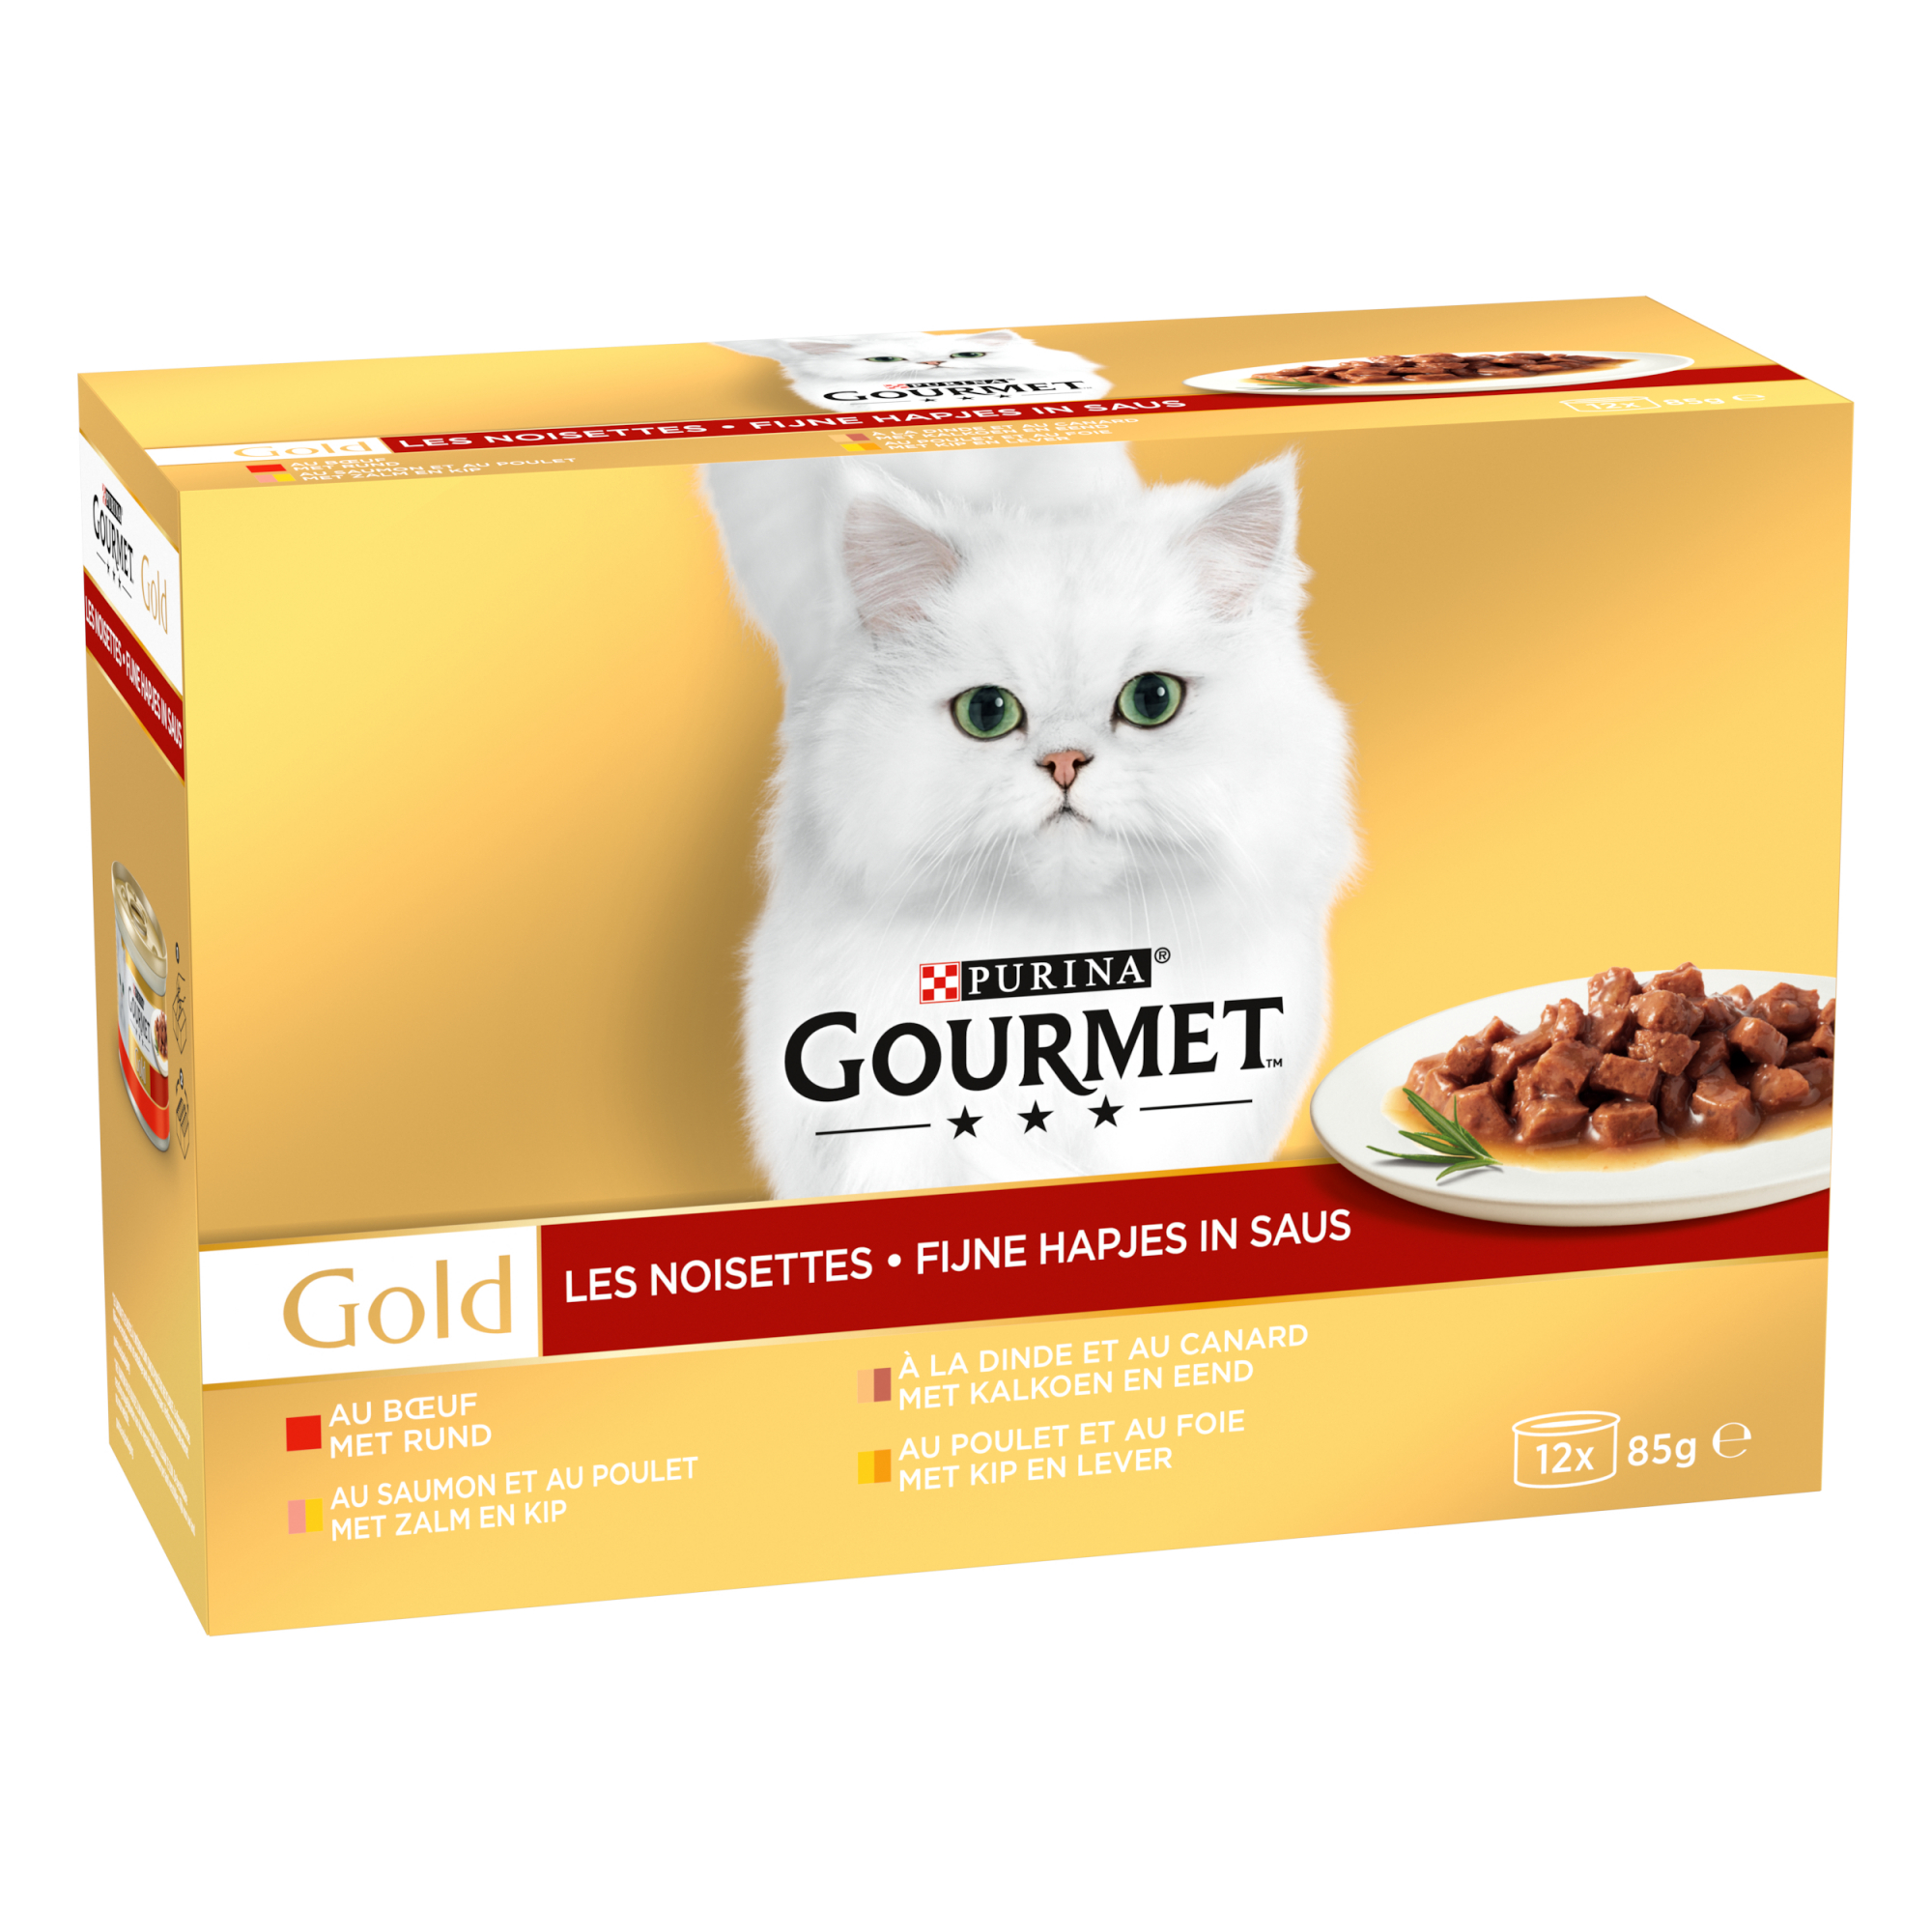 GOURMET GOLD Les Noisettes für erwachsene Katze 12x85g